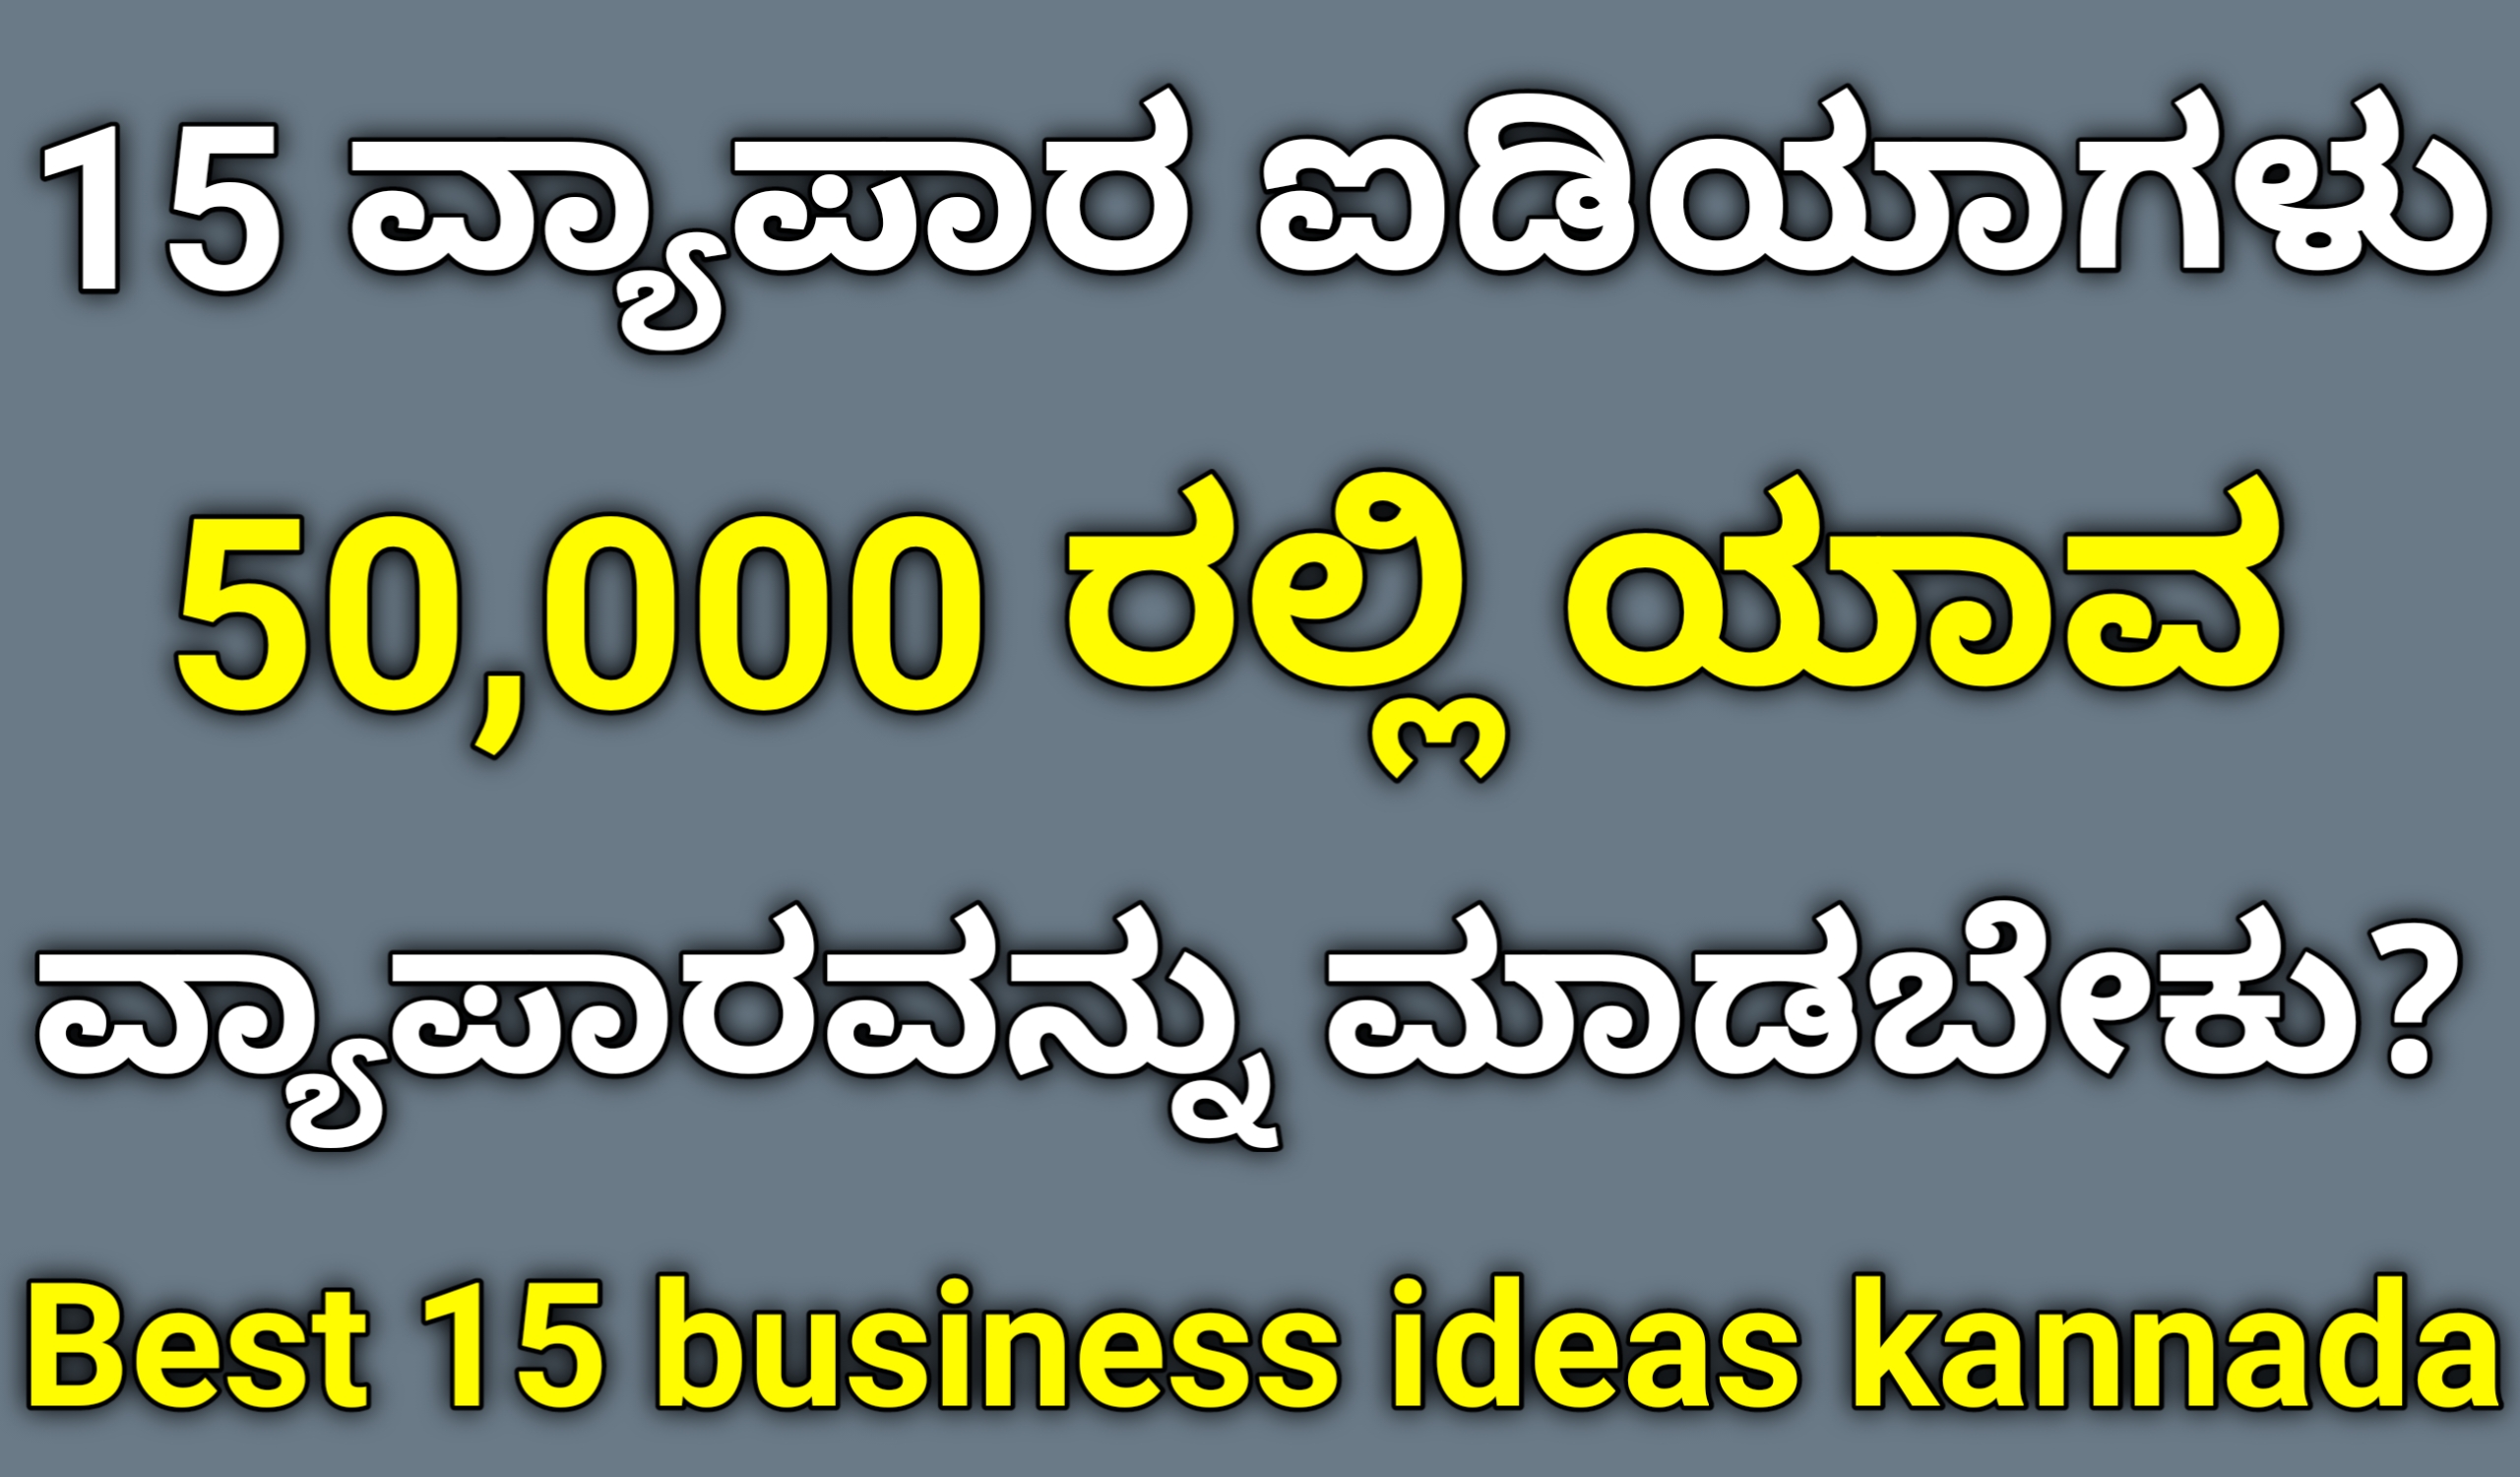 15 Best Business Ideas 2023 In Kannada 50,000 ರಲ್ಲಿ ಯಾವ ವ್ಯಾಪಾರವನ್ನು ಮಾಡಬೇಕು?